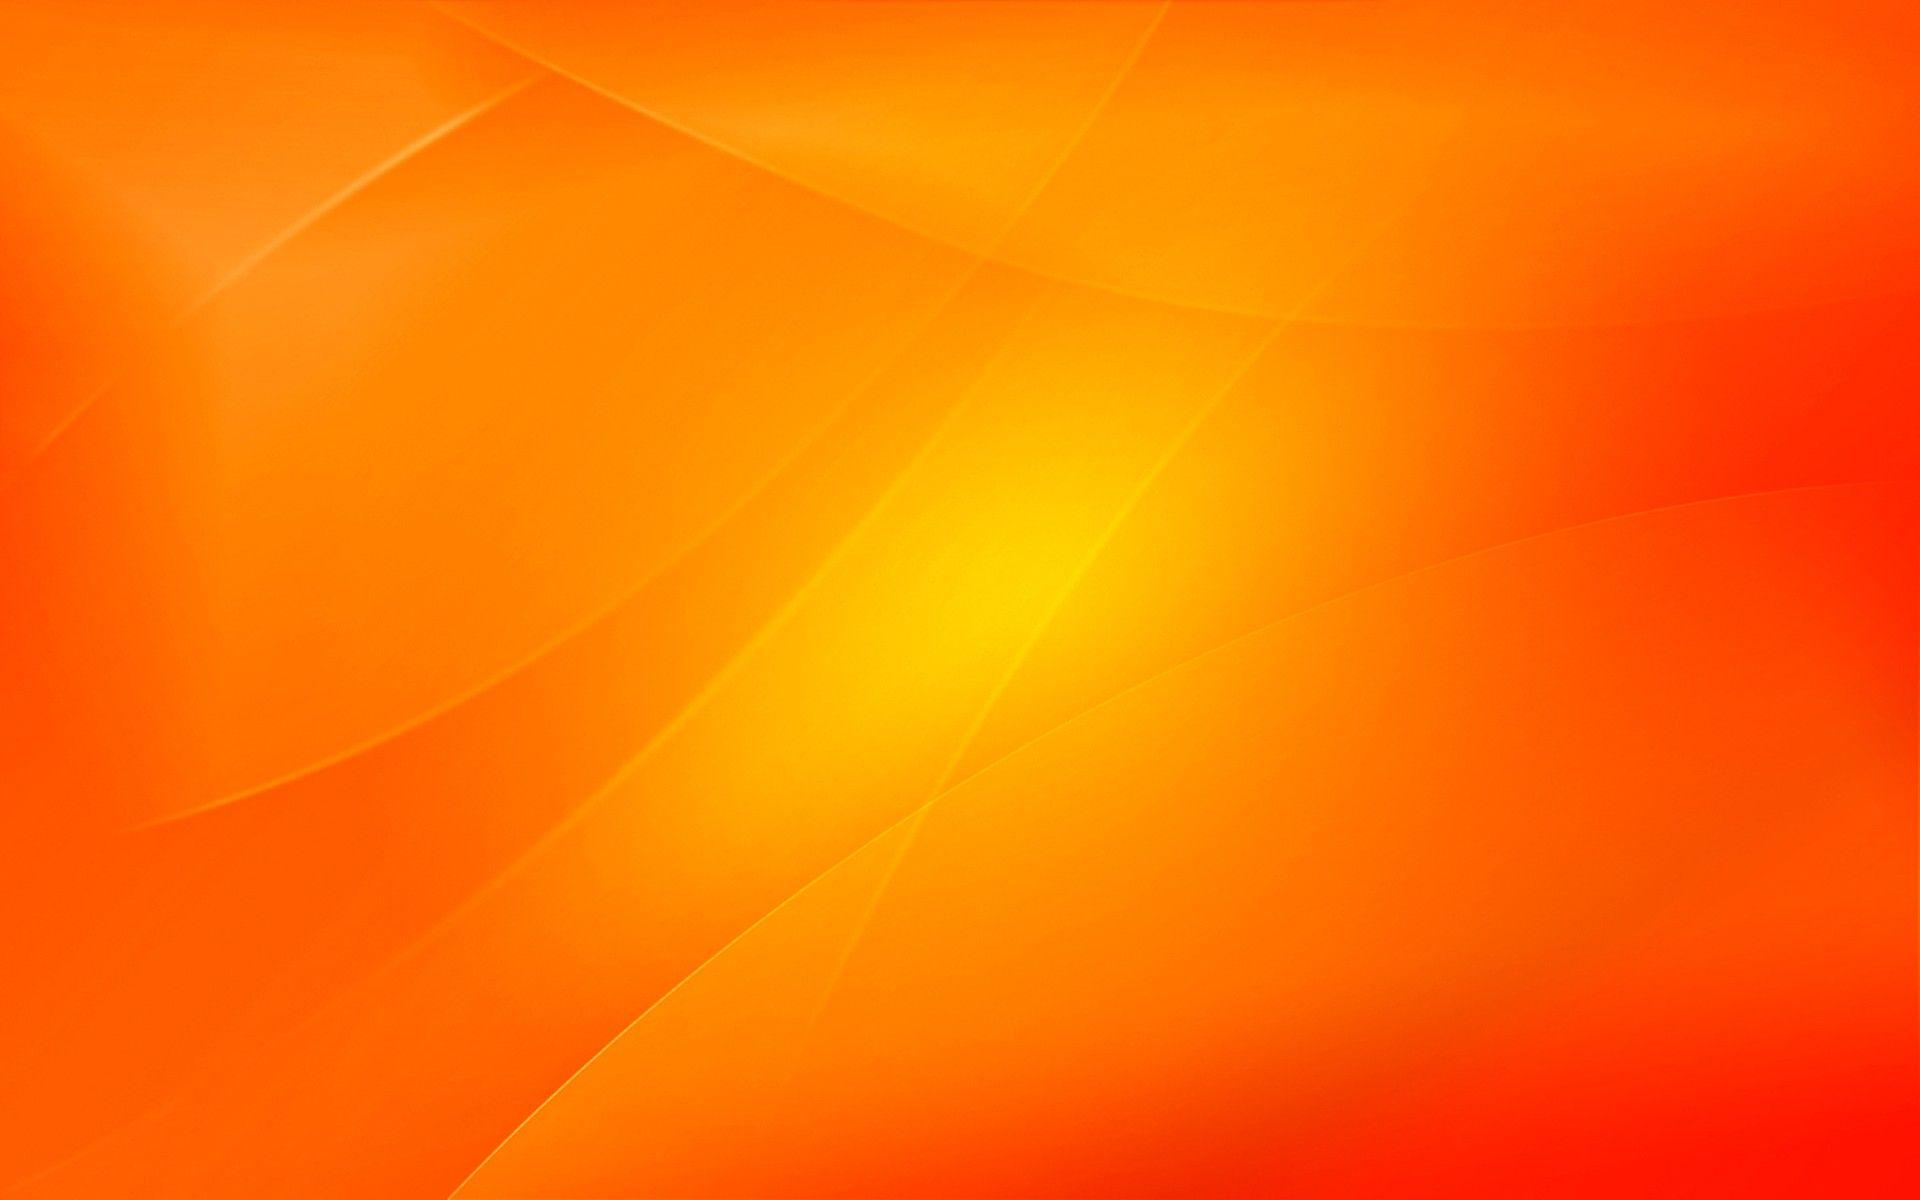 Hình Nền Màu Kuning Cam: Hình Nền Màu Kuning Cam mang lại cho người xem một cảm giác yên bình và ấm áp. Với sự pha trộn giữa màu cam và màu vàng, hình nền này sẽ làm cho bức ảnh của bạn thêm phần độc đáo và thu hút ánh nhìn. Hãy cùng khám phá và tận hưởng sự ấn tượng của nó.